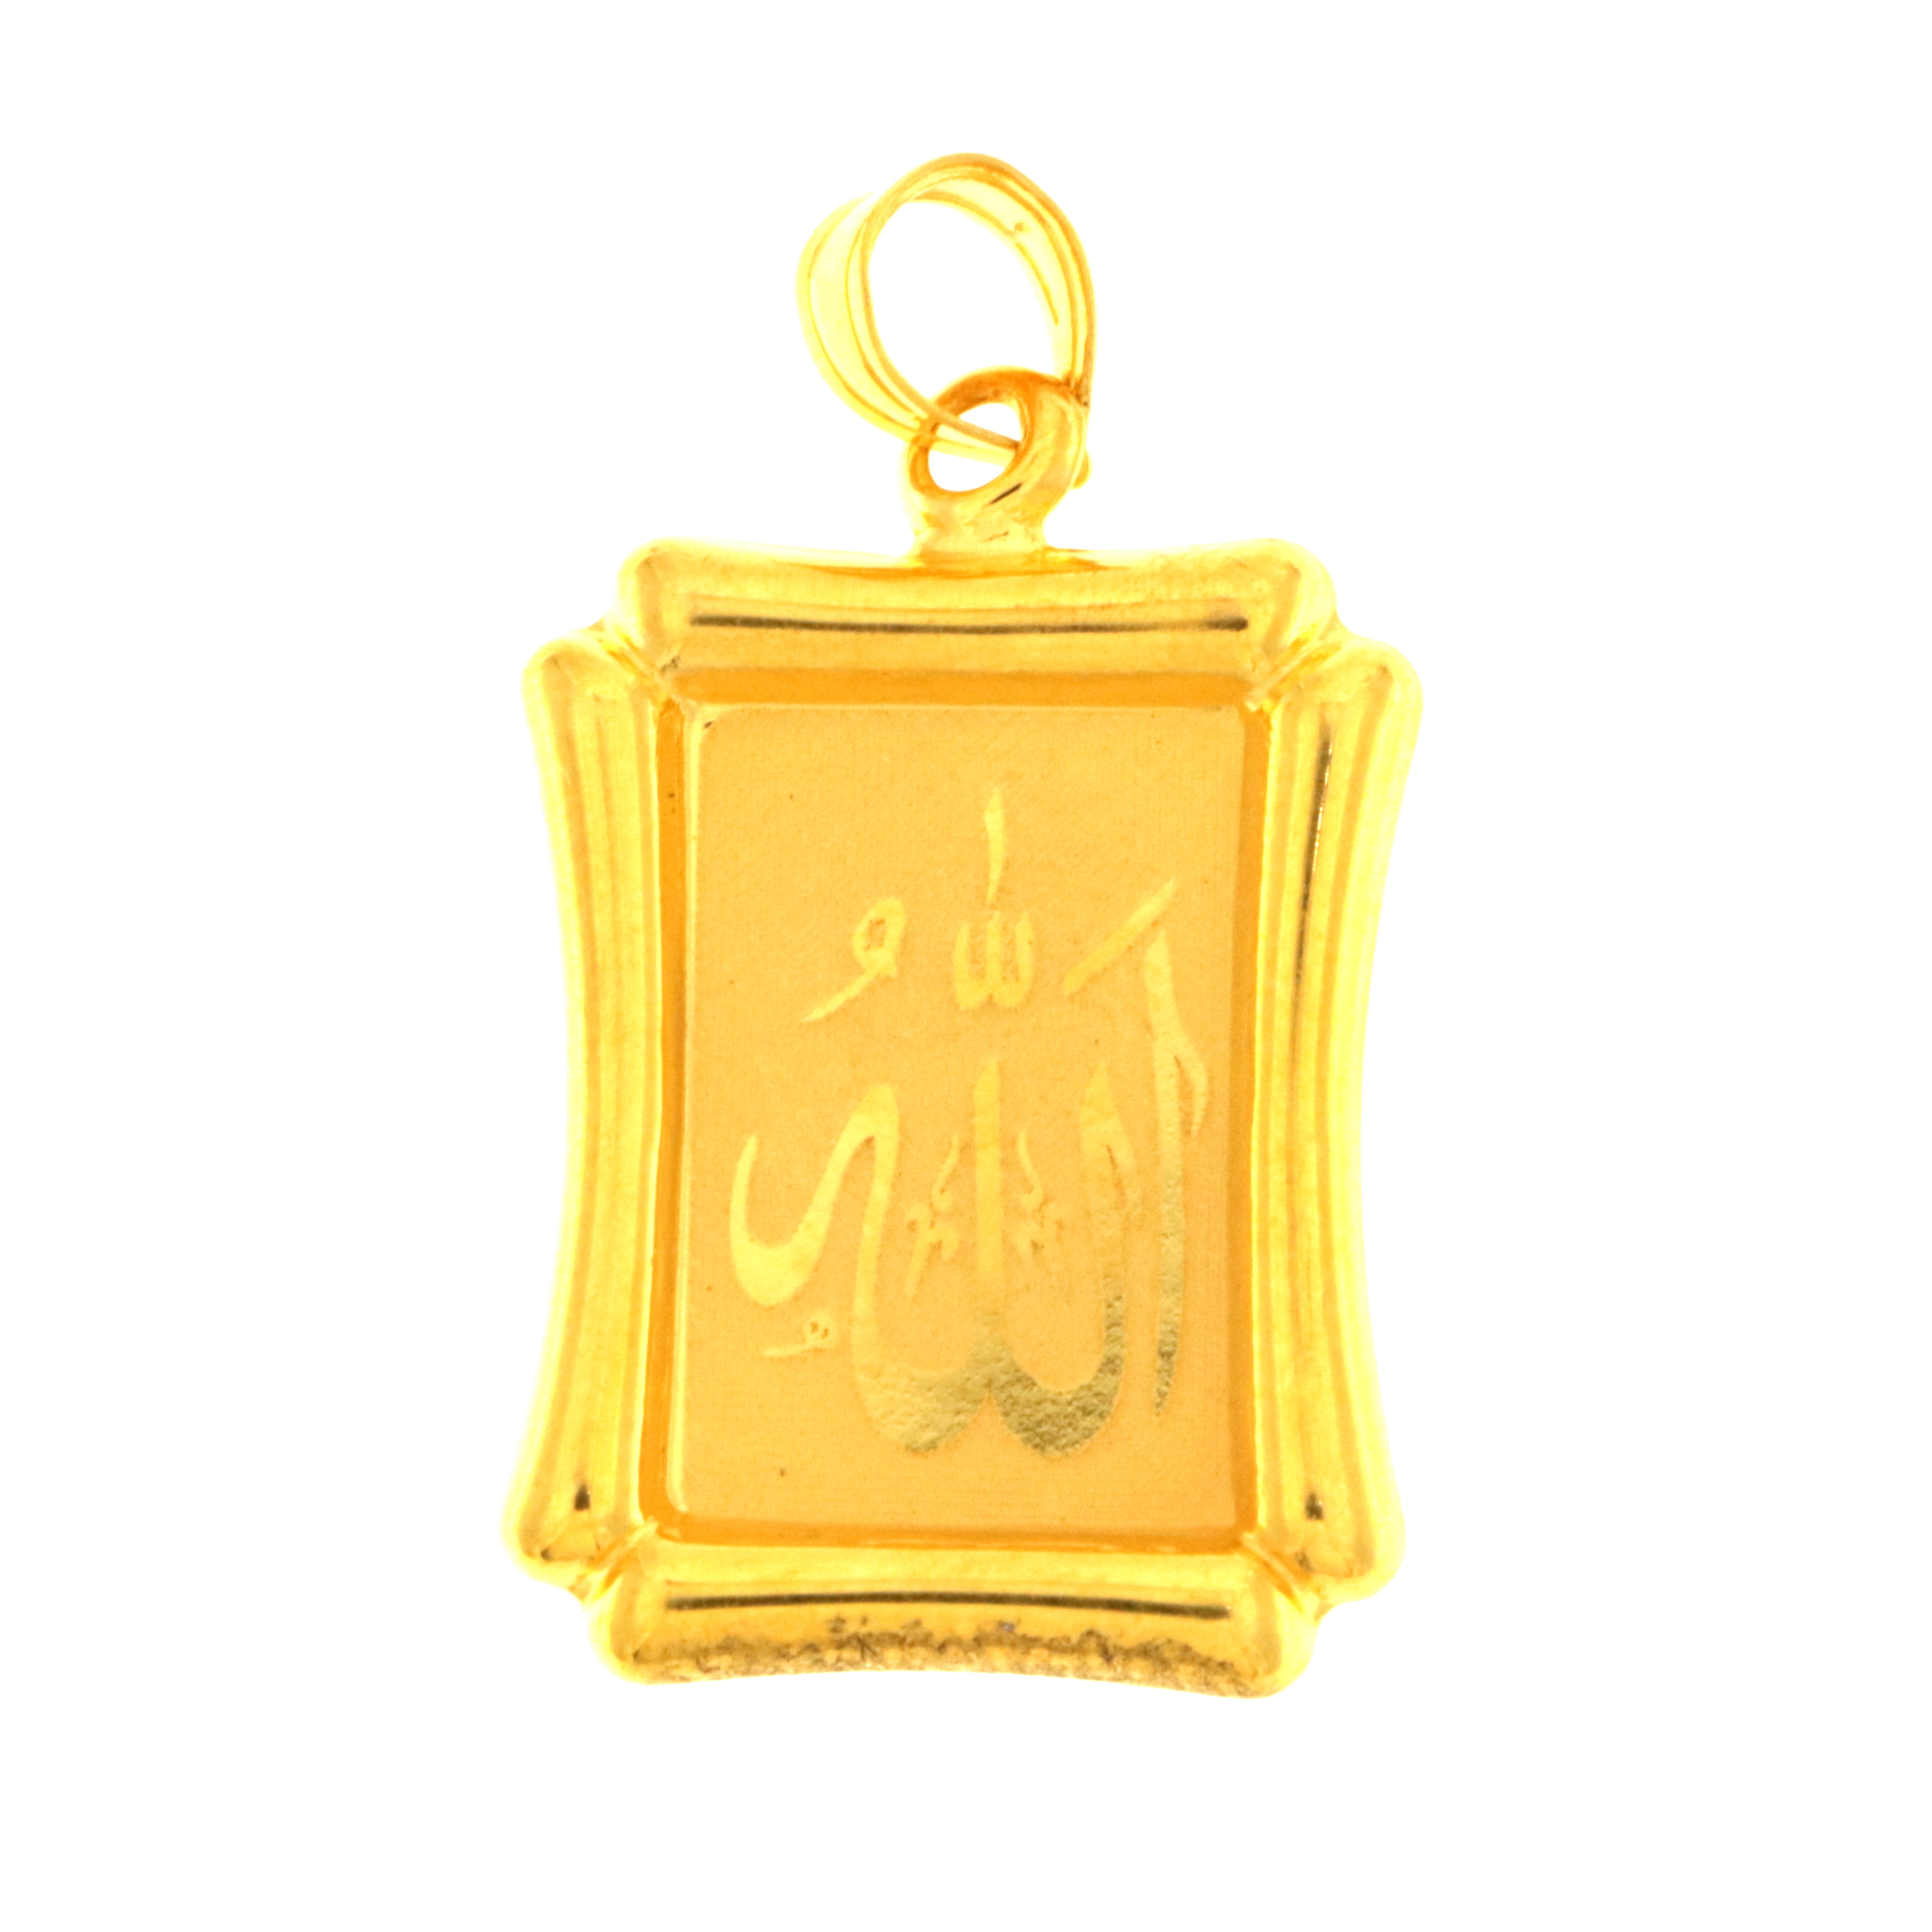 22carat Gold "Allah" Pendant